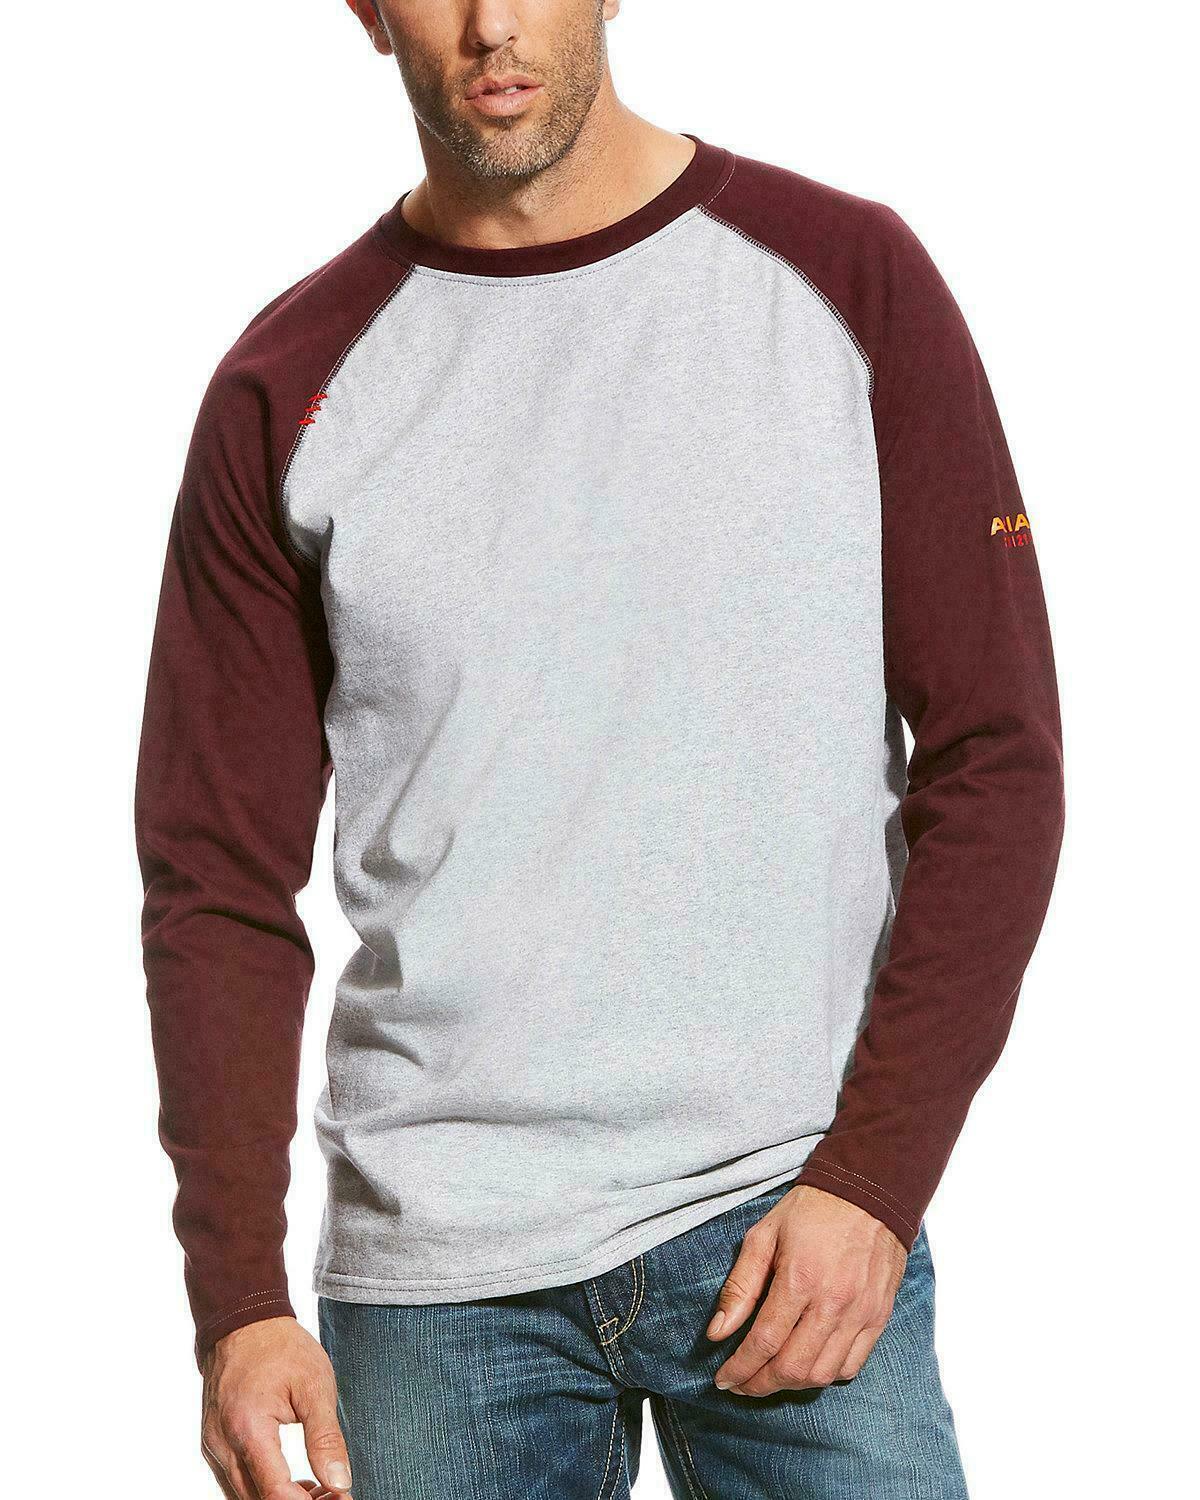 Ariat Men's FR Burgundy/Gray Long Sleeve Baseball Shirt